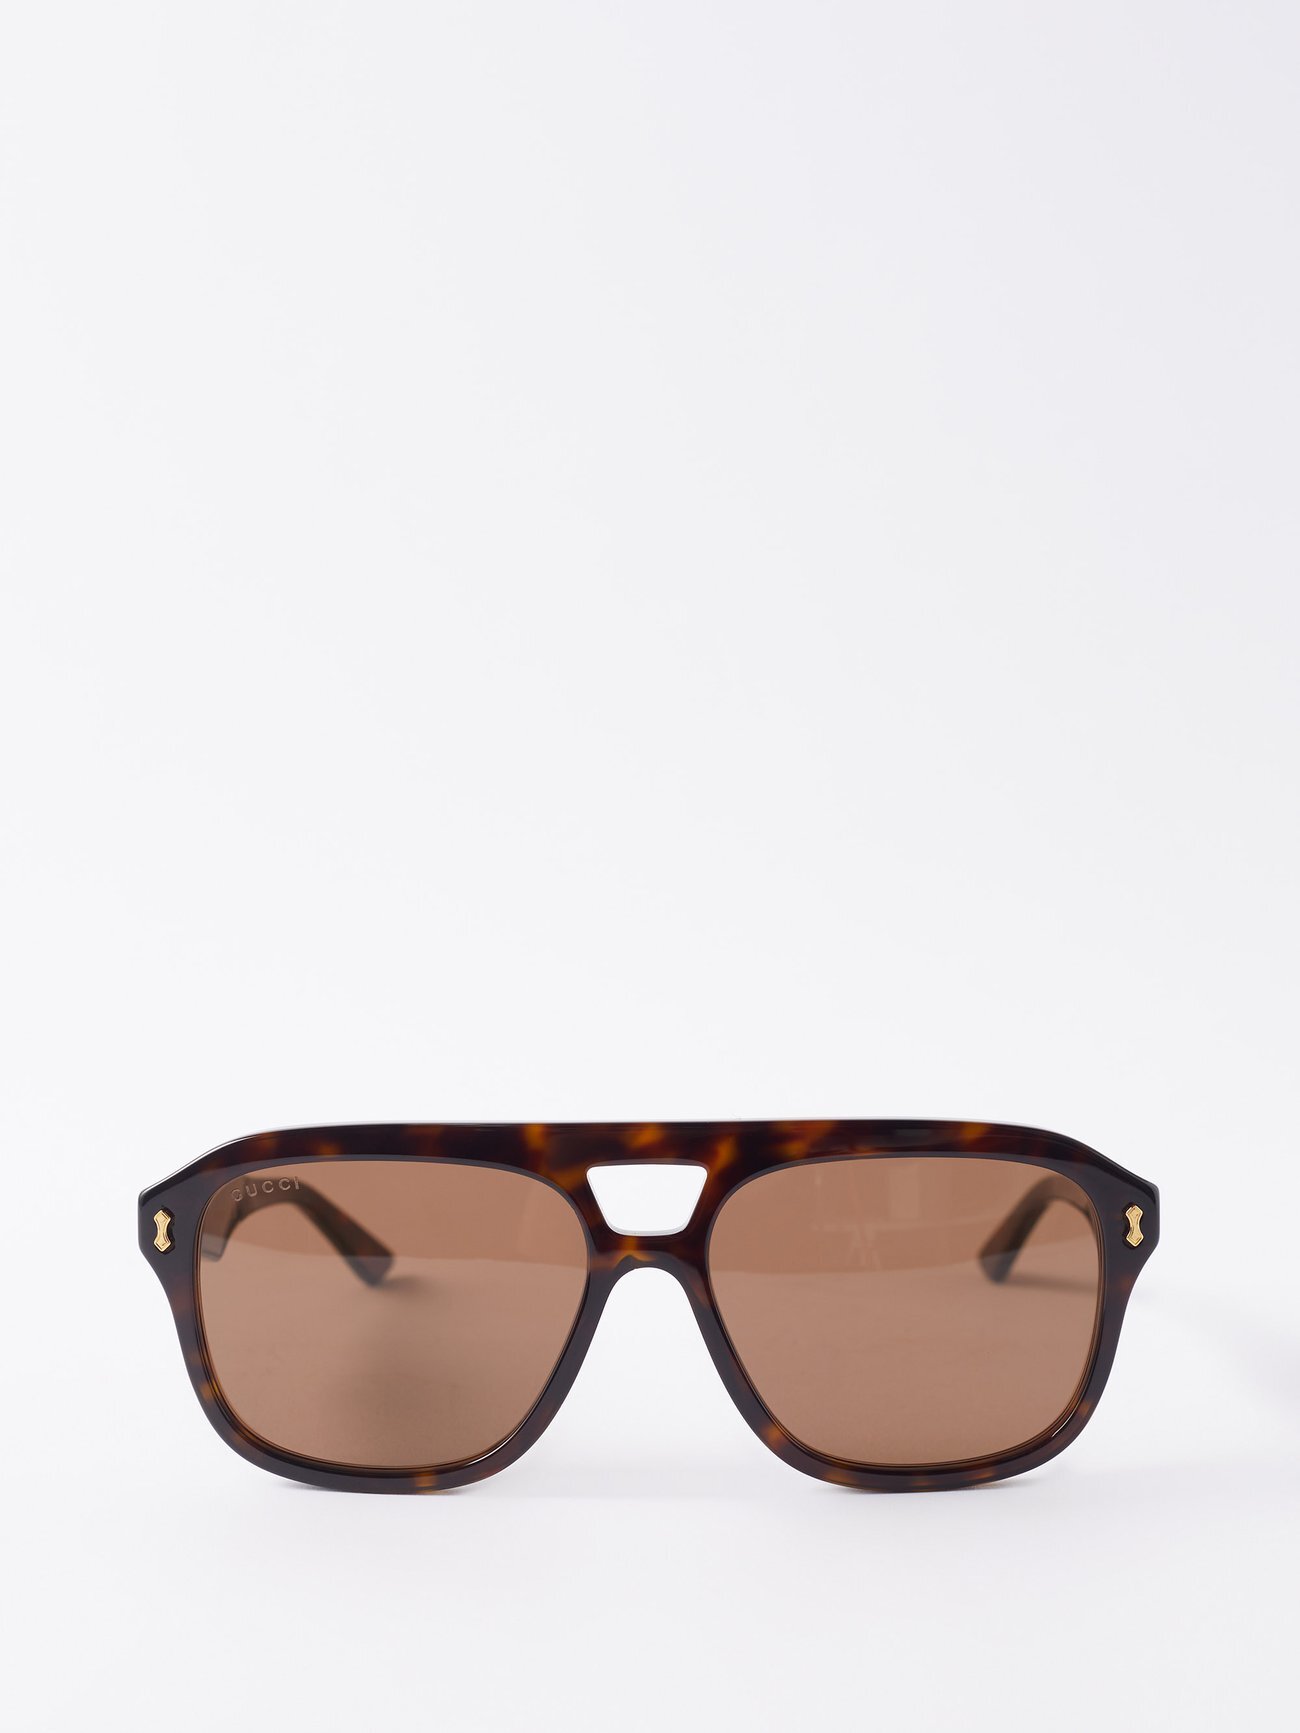 Gucci Eyewear - Aviator Tortoiseshell-acetate Sunglasses - Womens - Brown Multi